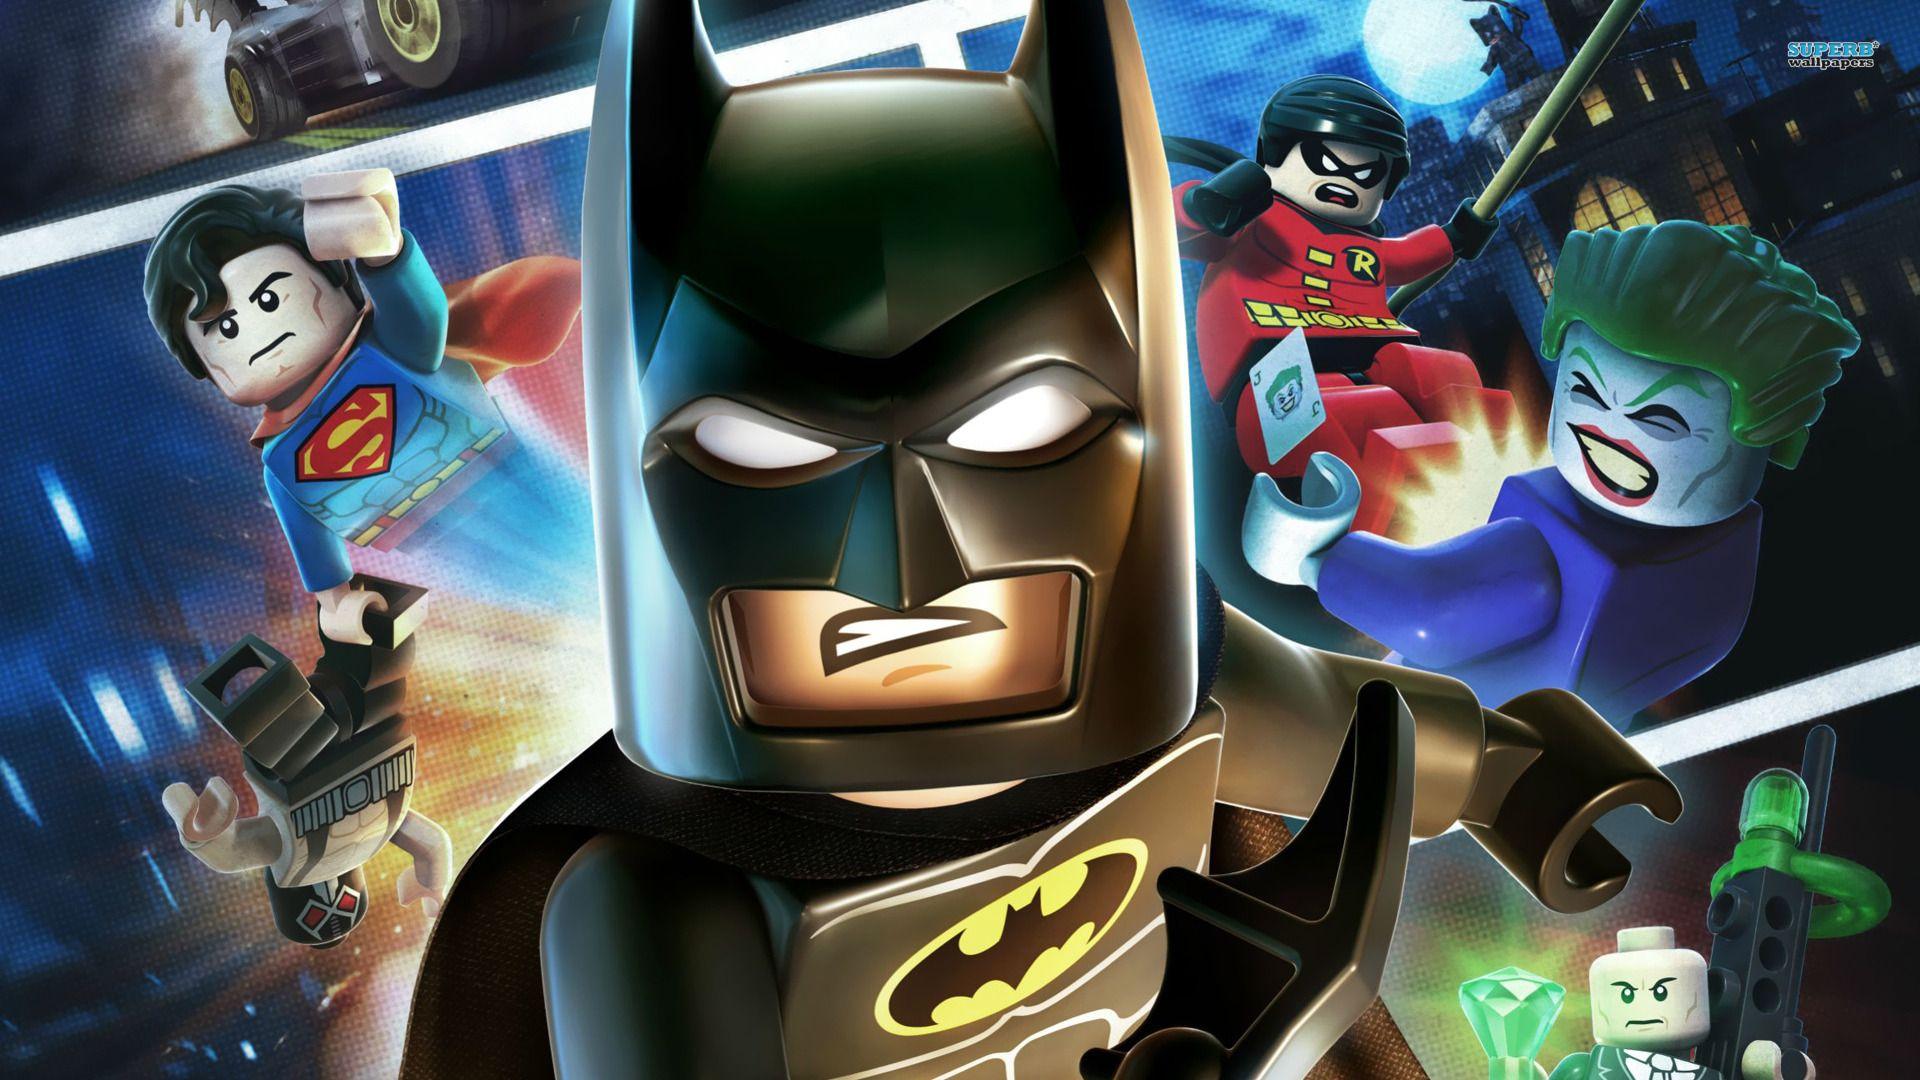 Lego Marvel Super Heroes Wallpaper HD